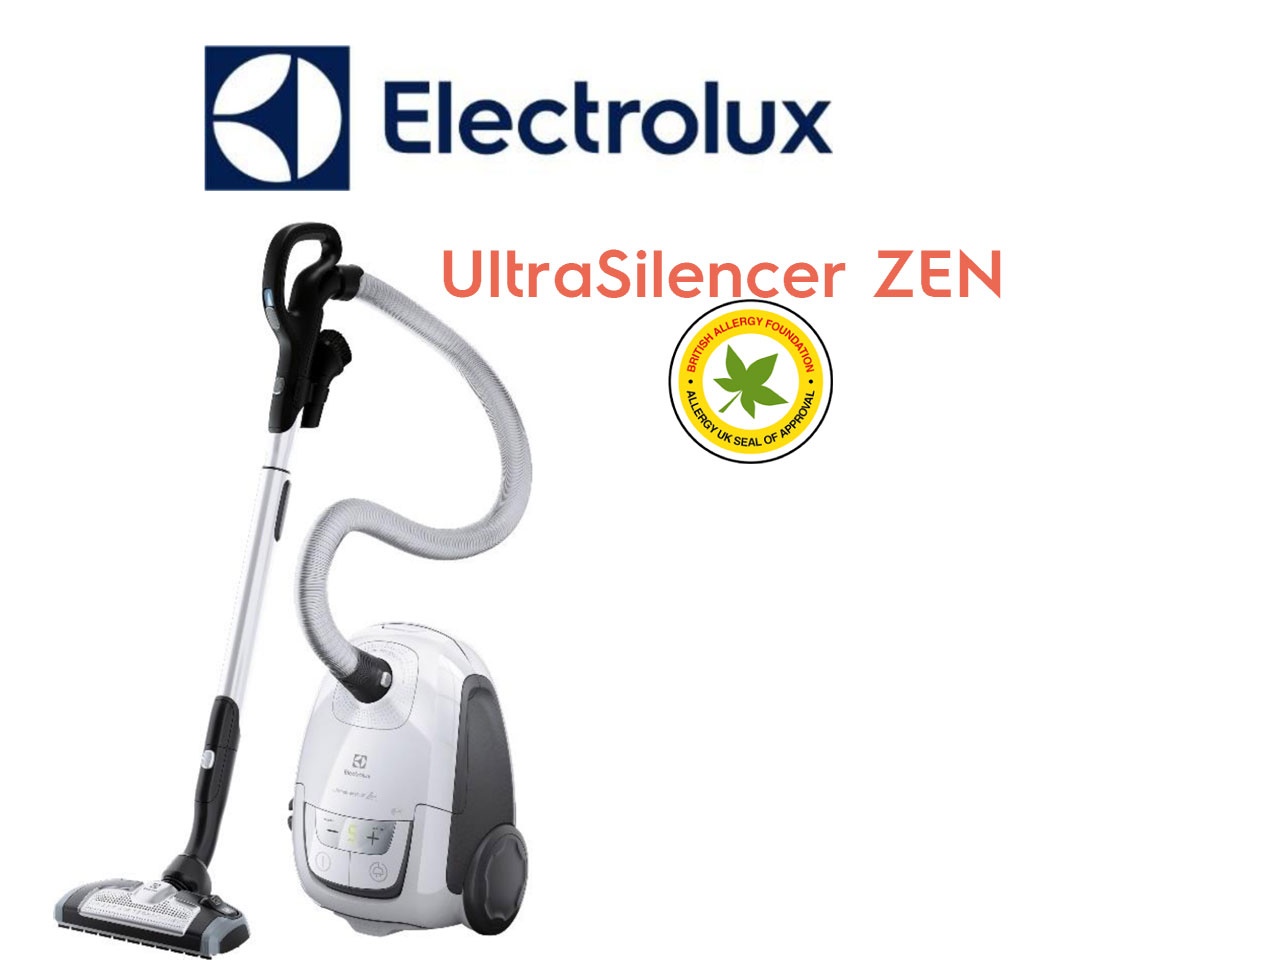 Electrolux certifié par la British Allergy Foundation pour ses aspirateurs UltraSilencer ZEN